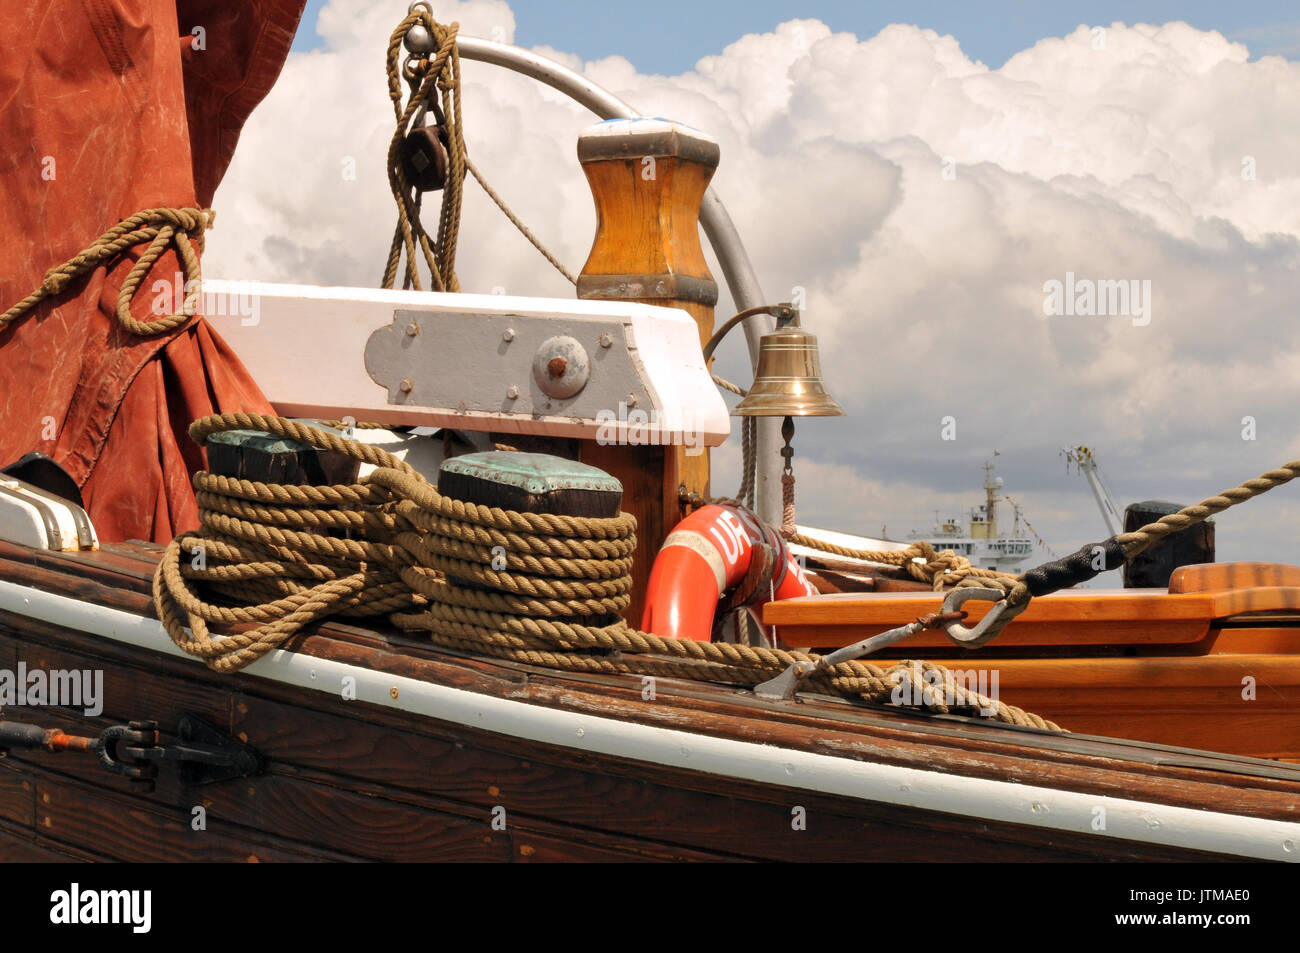 Una tradizionale imbarcazione a vela Ursula cowes week thames chiatta vele rosso e tutte le costruzioni in legno con funi di blocchi e affronta il rigging longheroni in legno Foto Stock